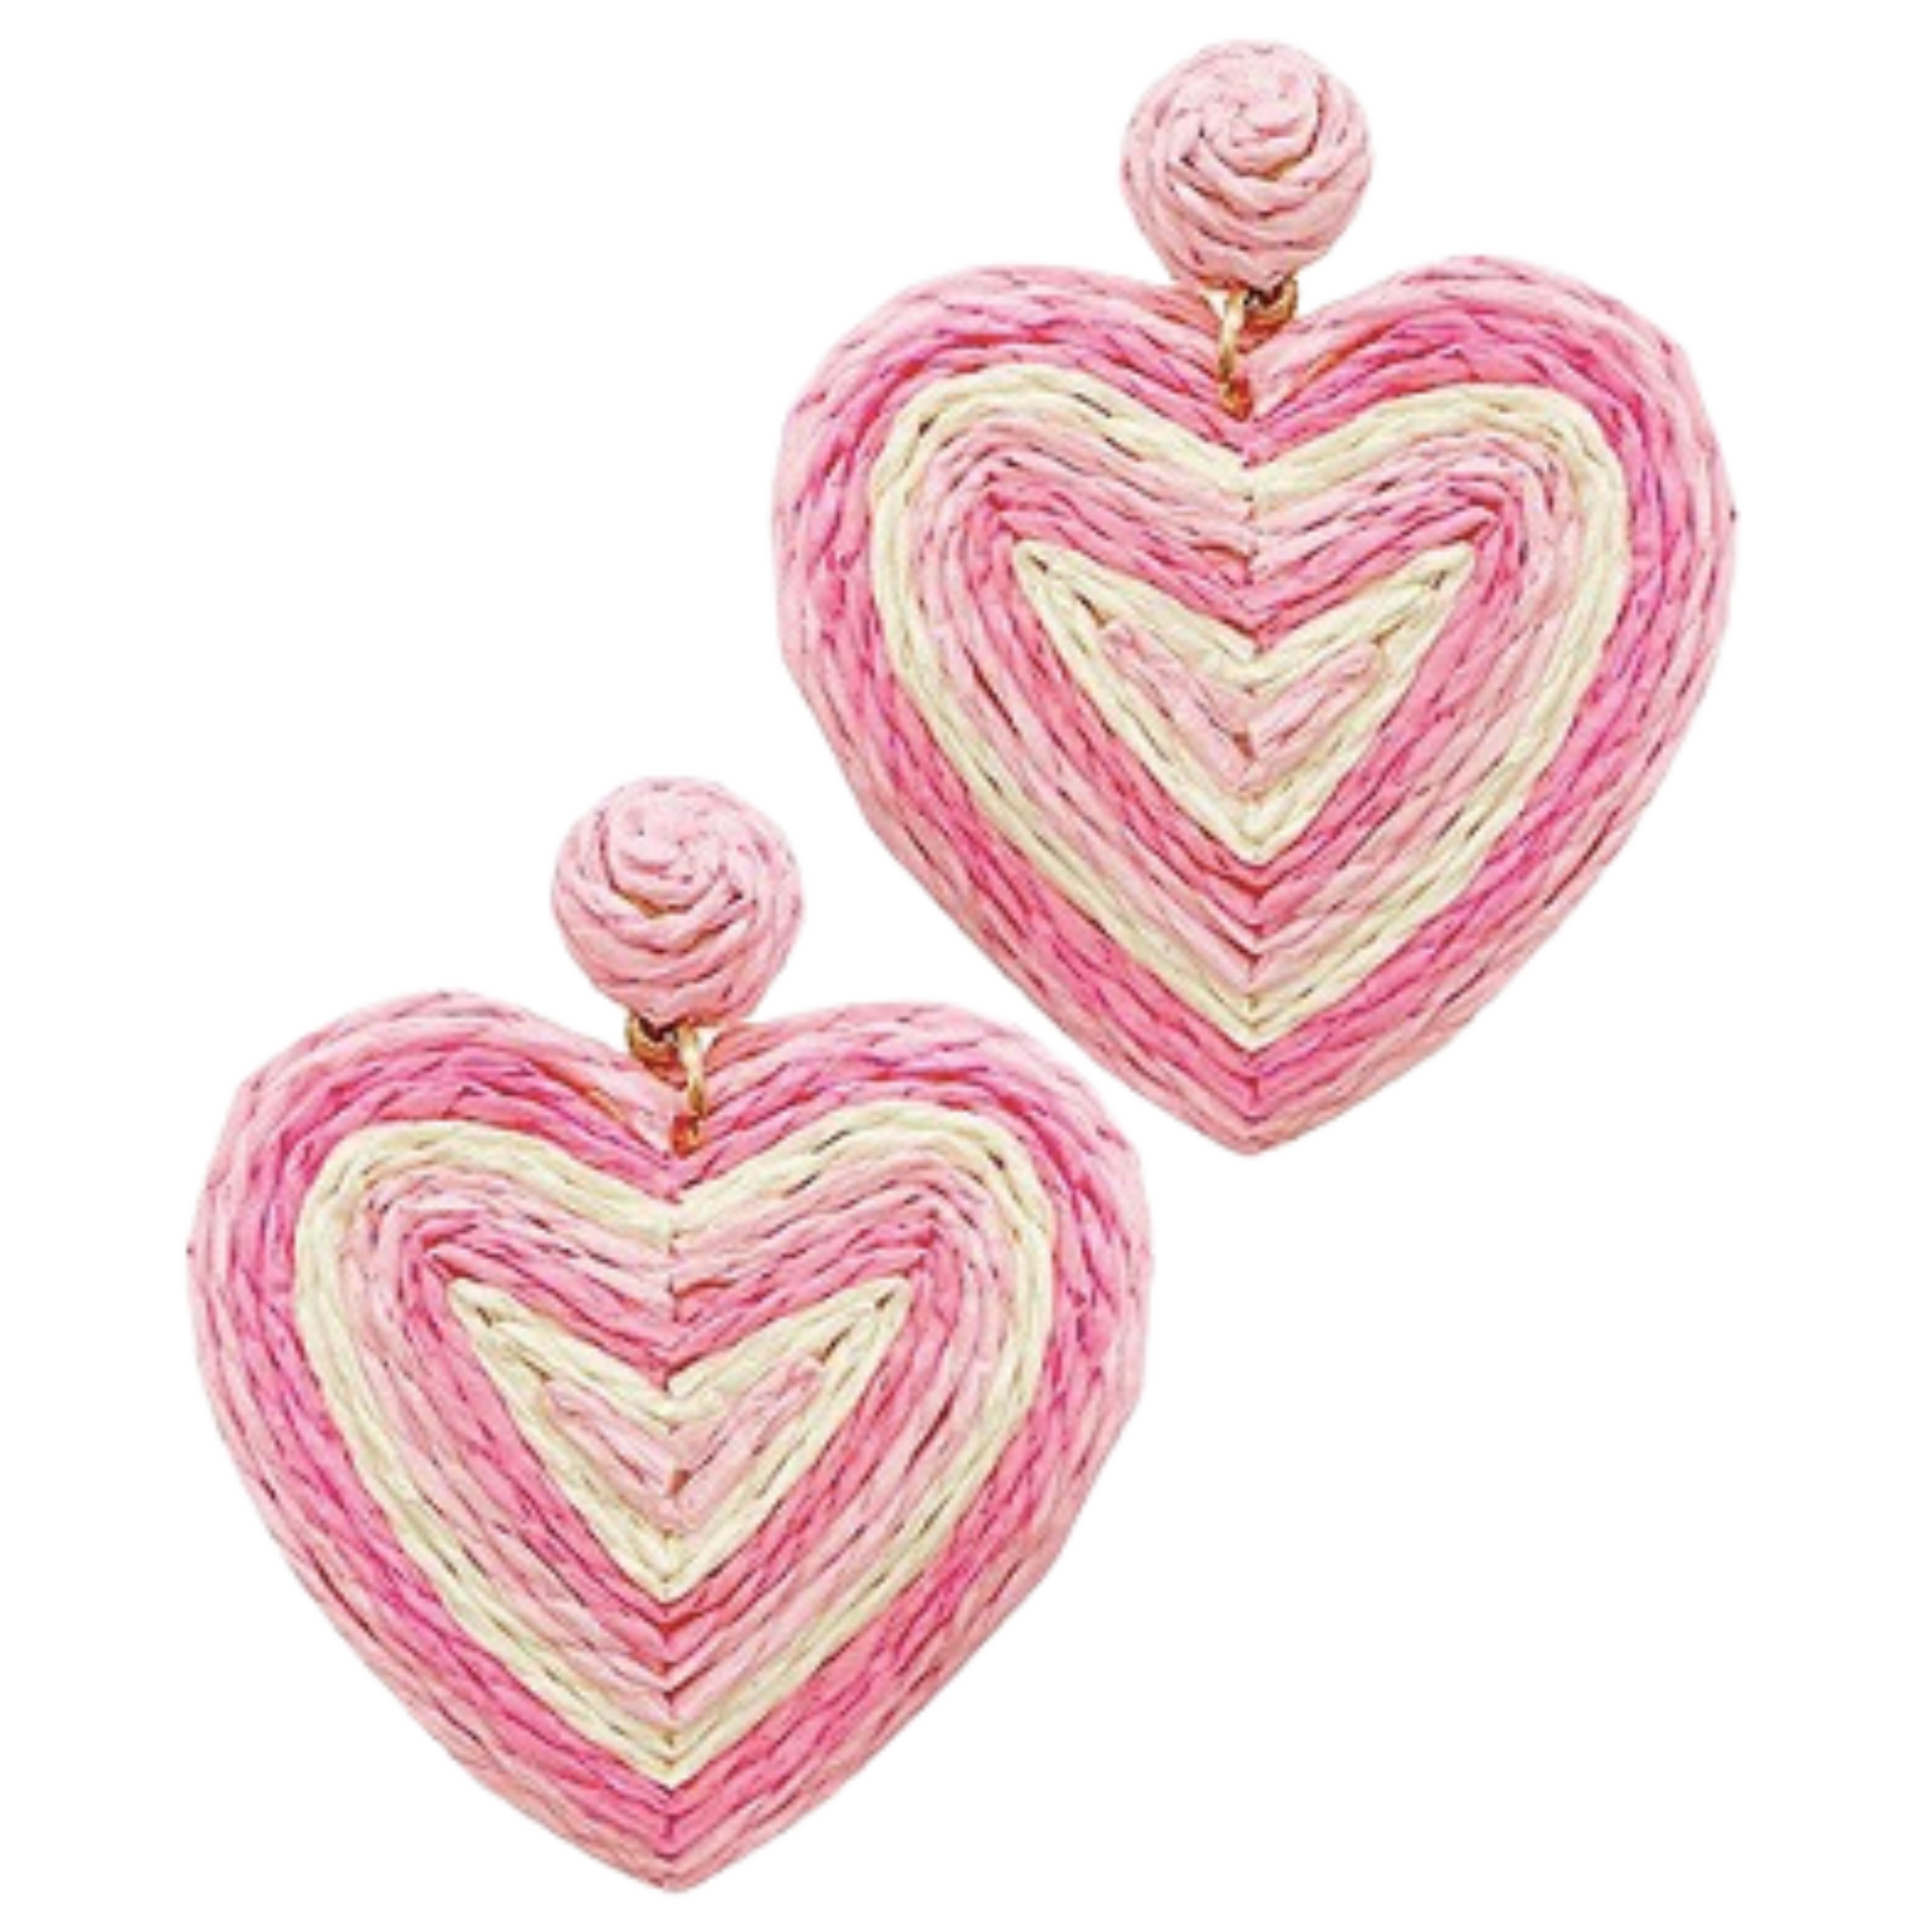 Raffia wrapped heart earrings in pink